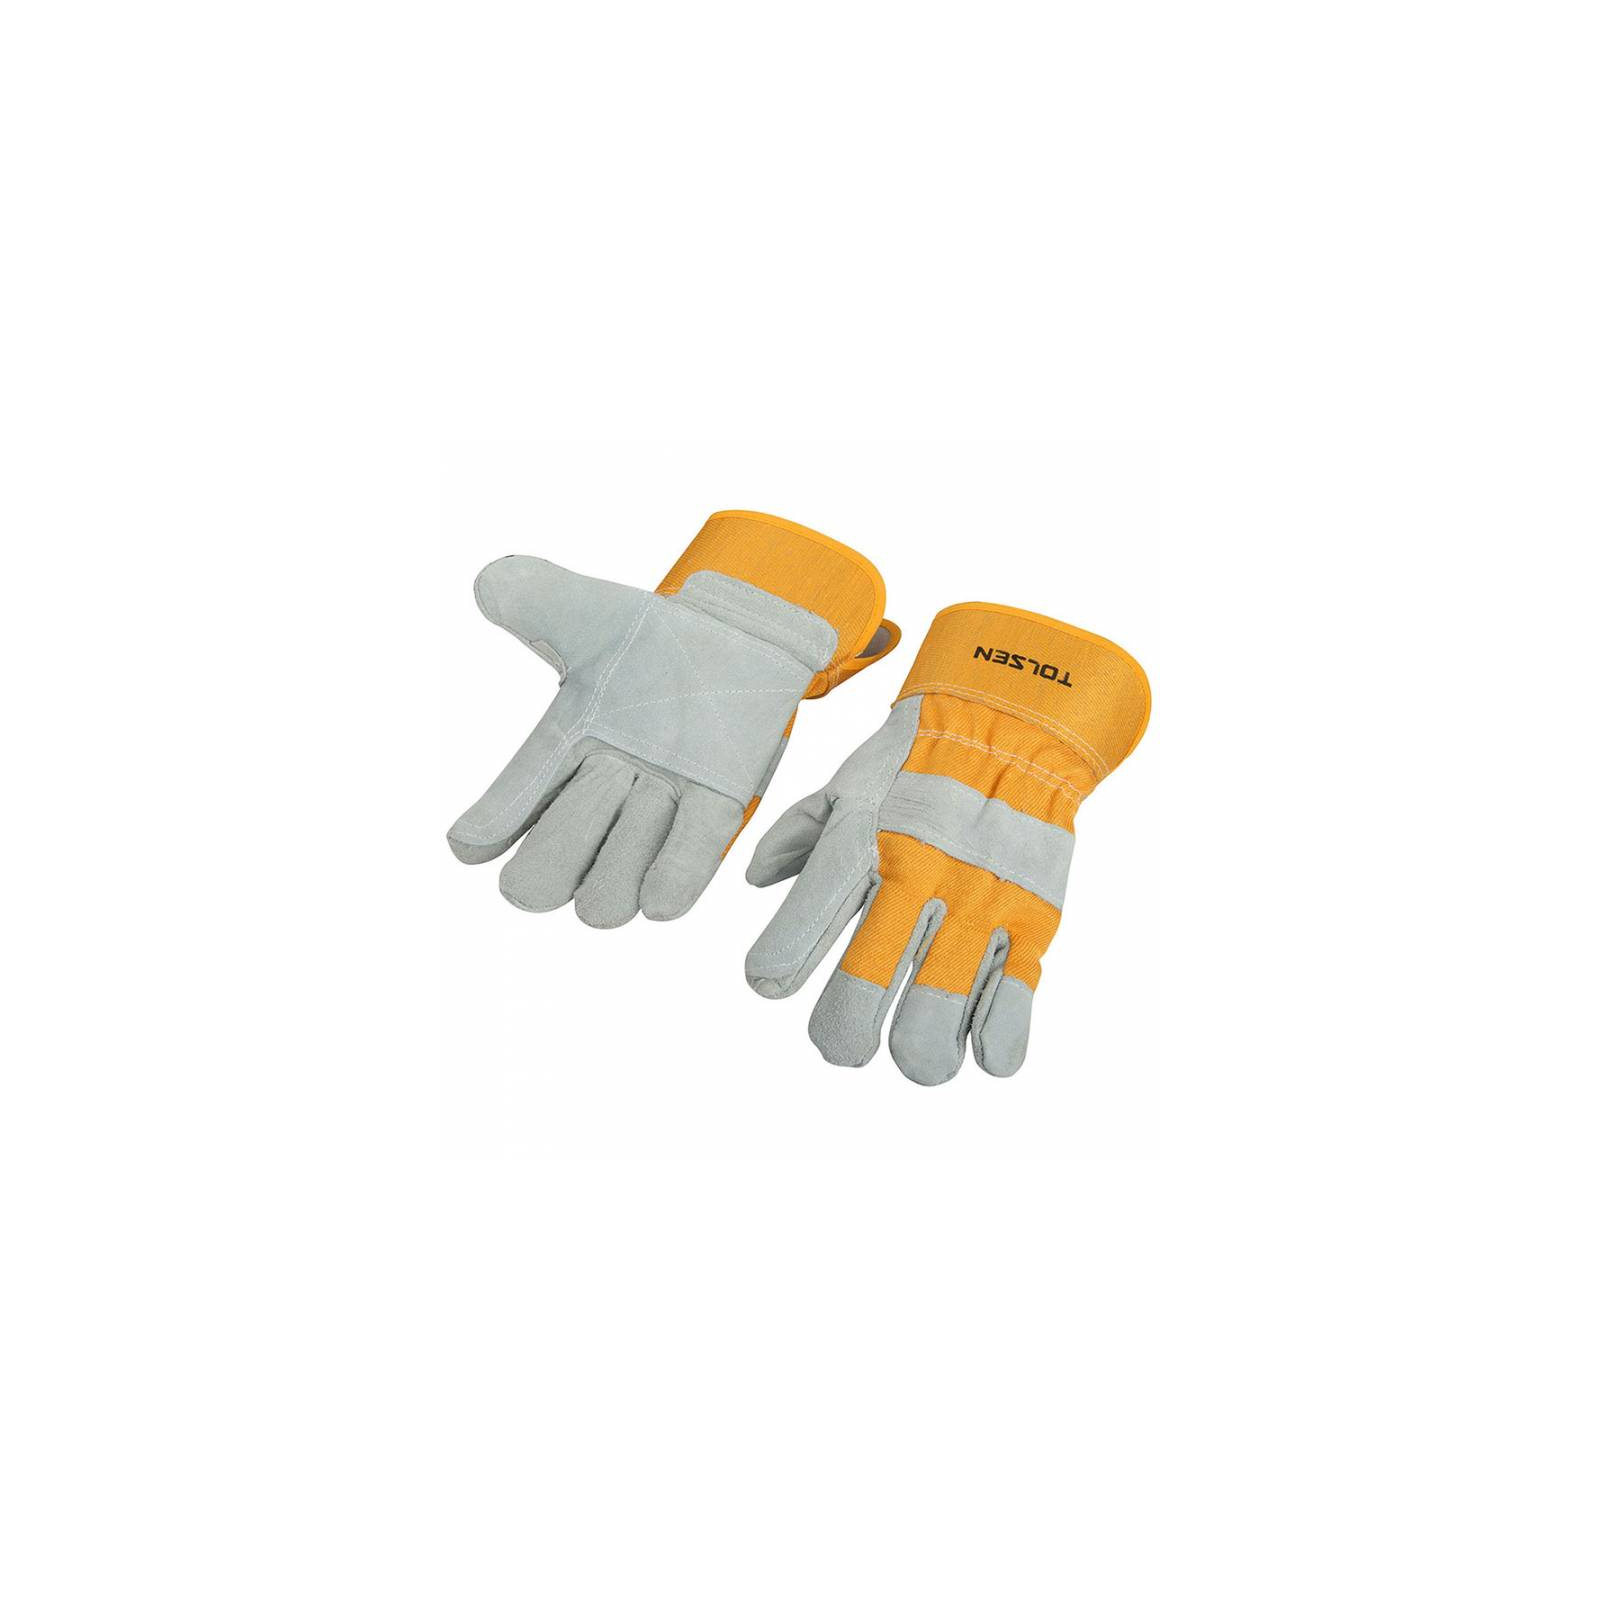 Защитные перчатки Tolsen кожаные XL (45024)